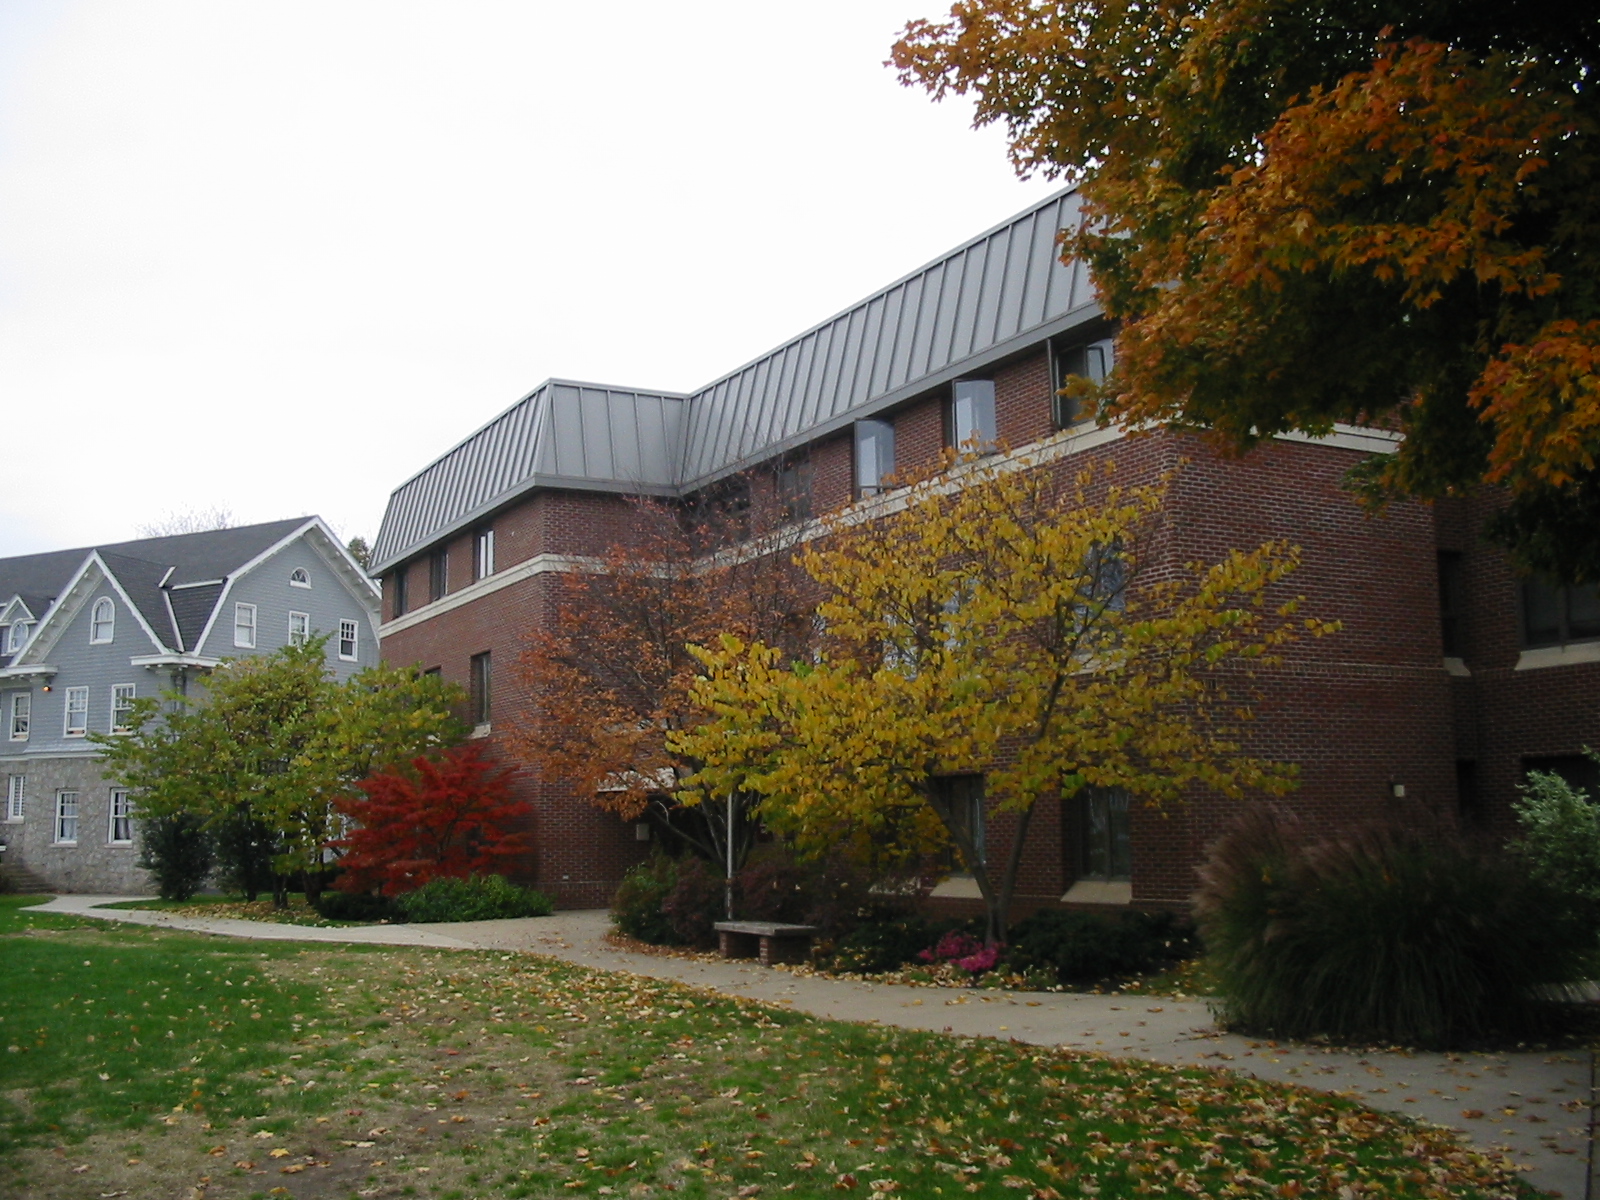 Lafayette College Dorms